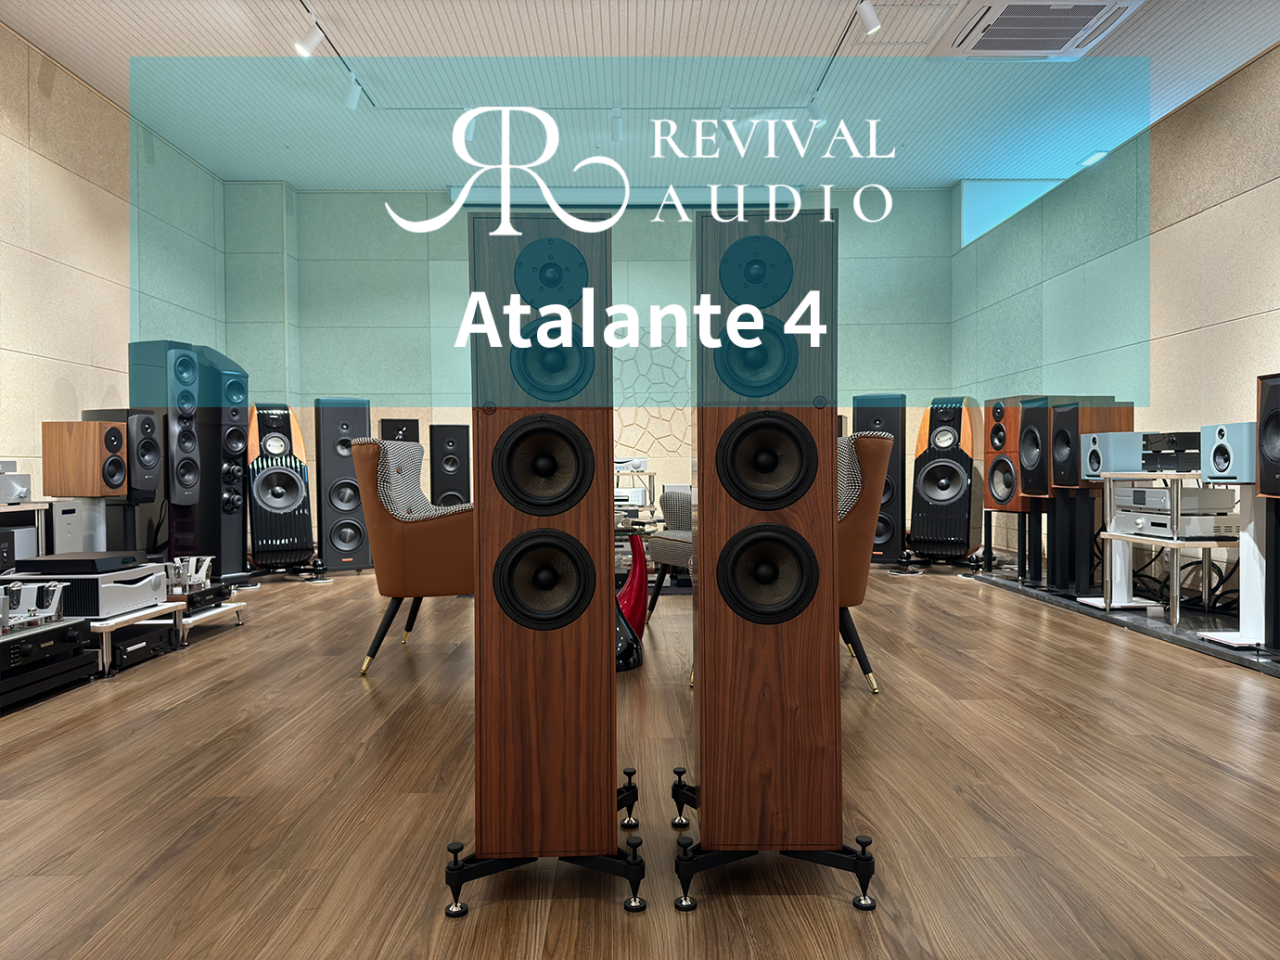 Revival Audio Atalante(리바이벌 오디오 아탈란테) 4 입고 및 전시